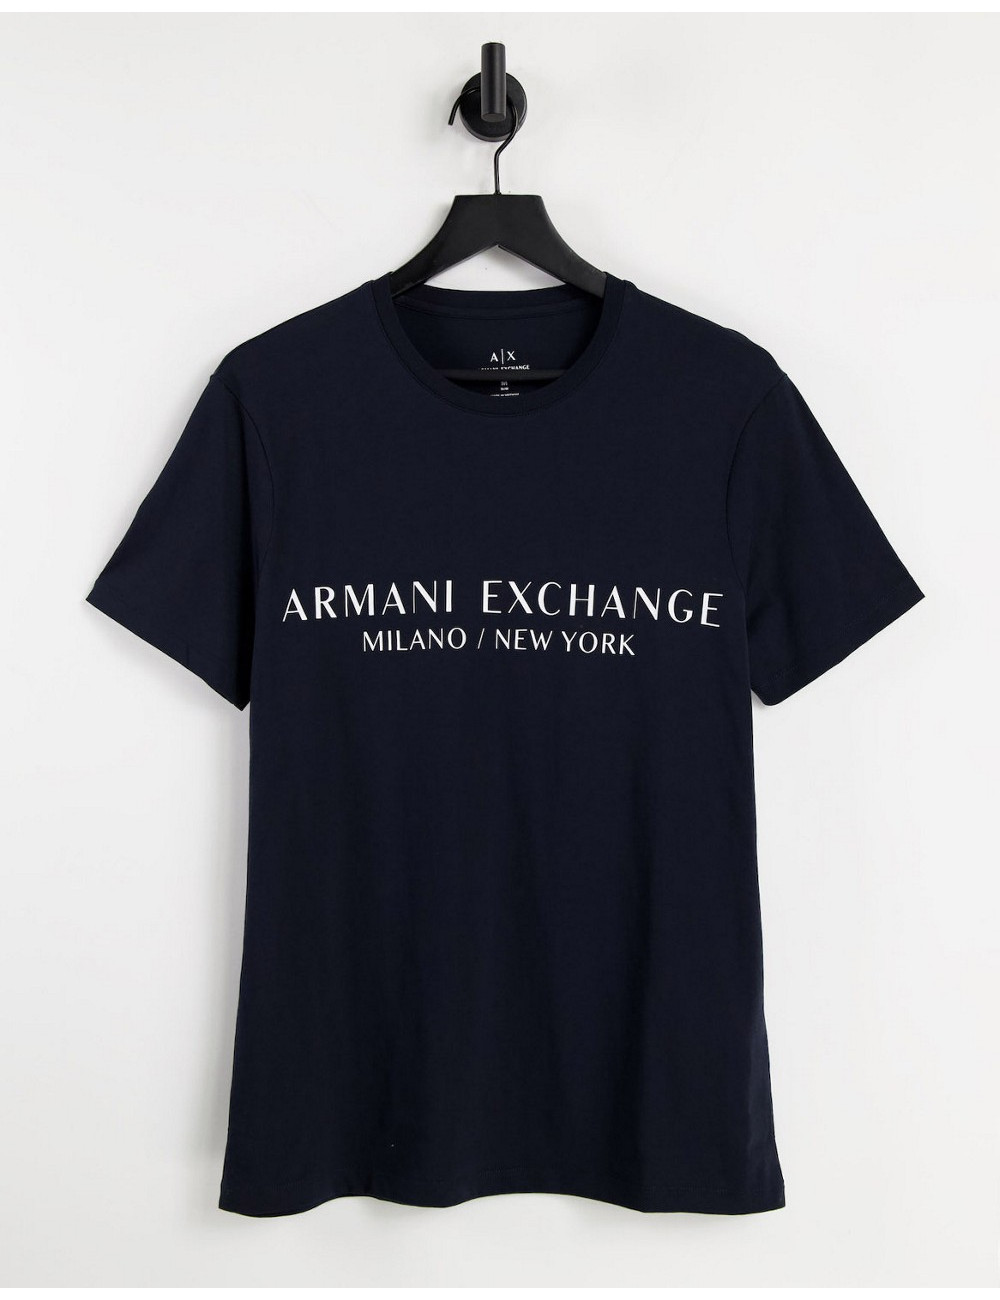 Armani Exchange city text...